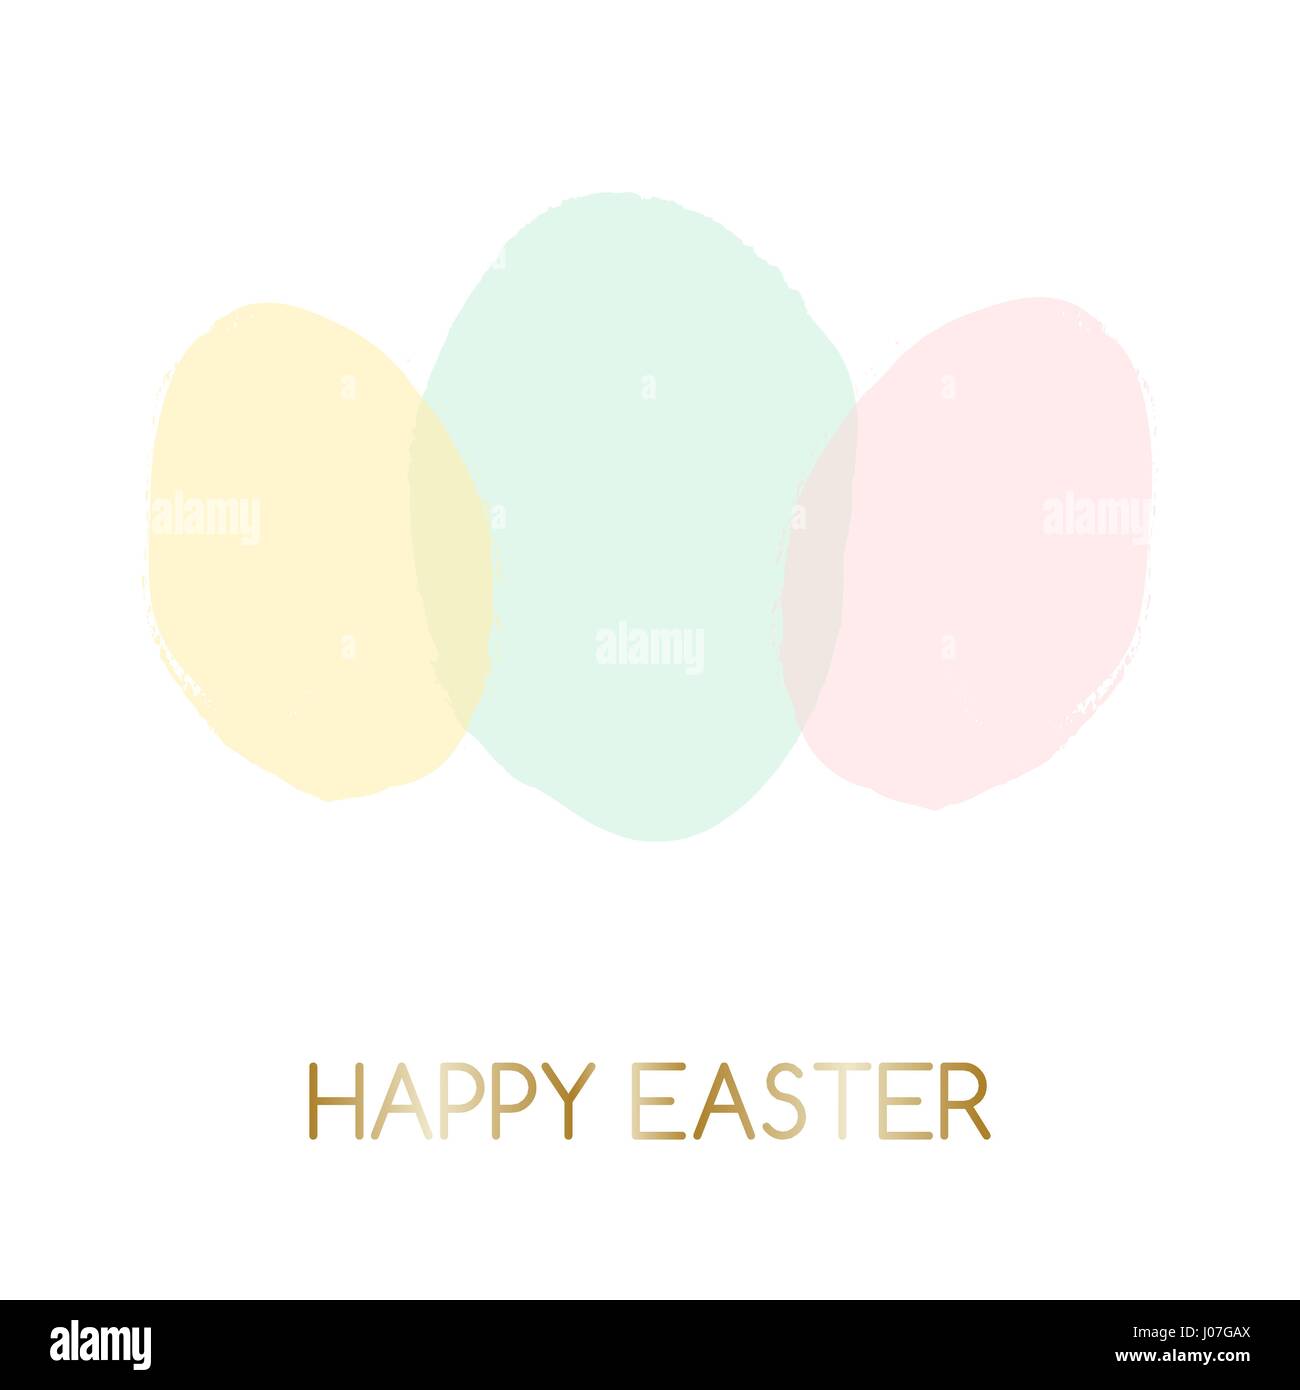 Ostern Grußkarte design mit Text "Frohe Ostern" in Gold und bunten Pastell rosa, grün und gelb Ostereier im Hintergrund. Stock Vektor